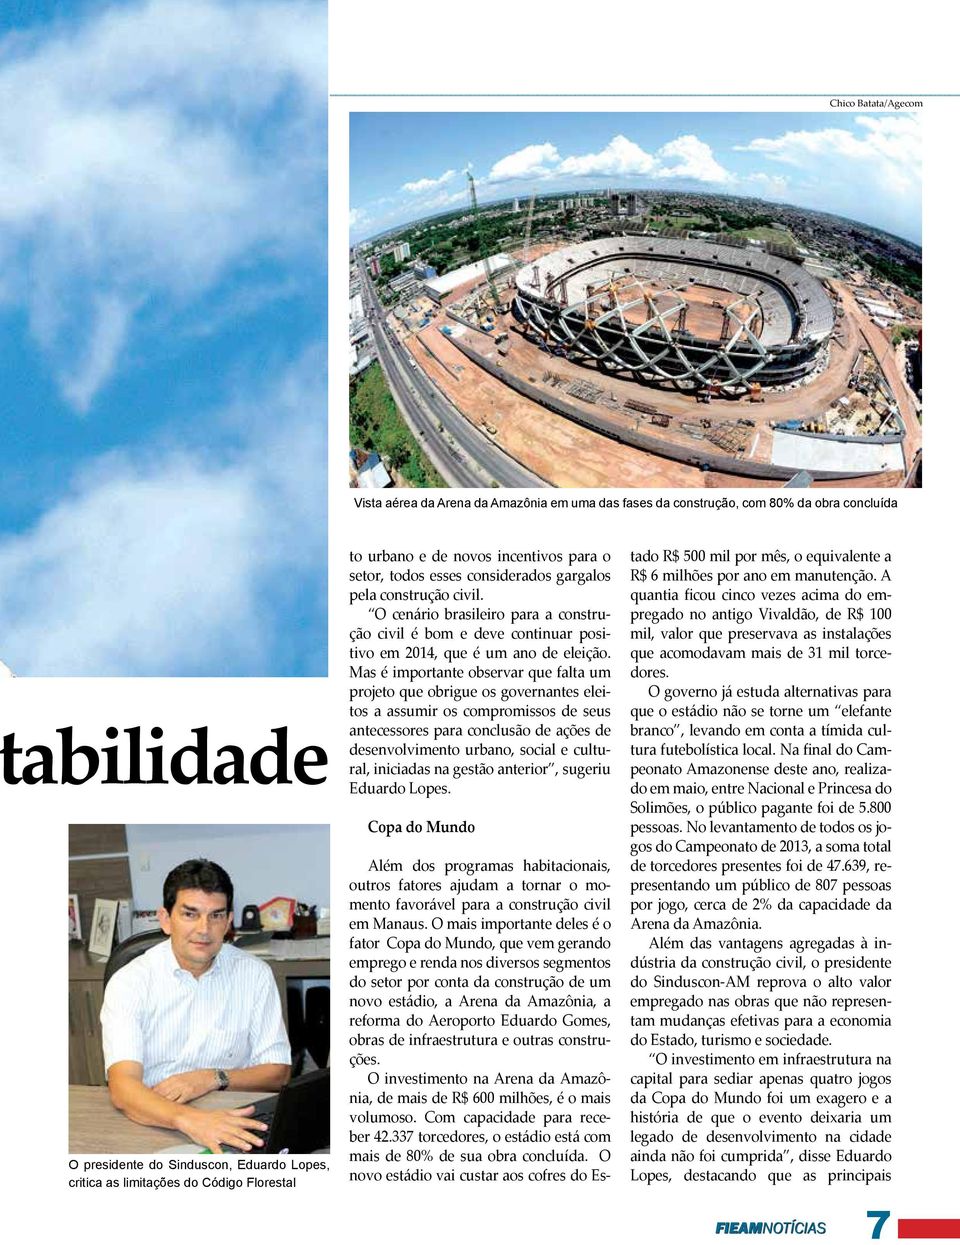 O cenário brasileiro para a construção civil é bom e deve continuar positivo em 2014, que é um ano de eleição.